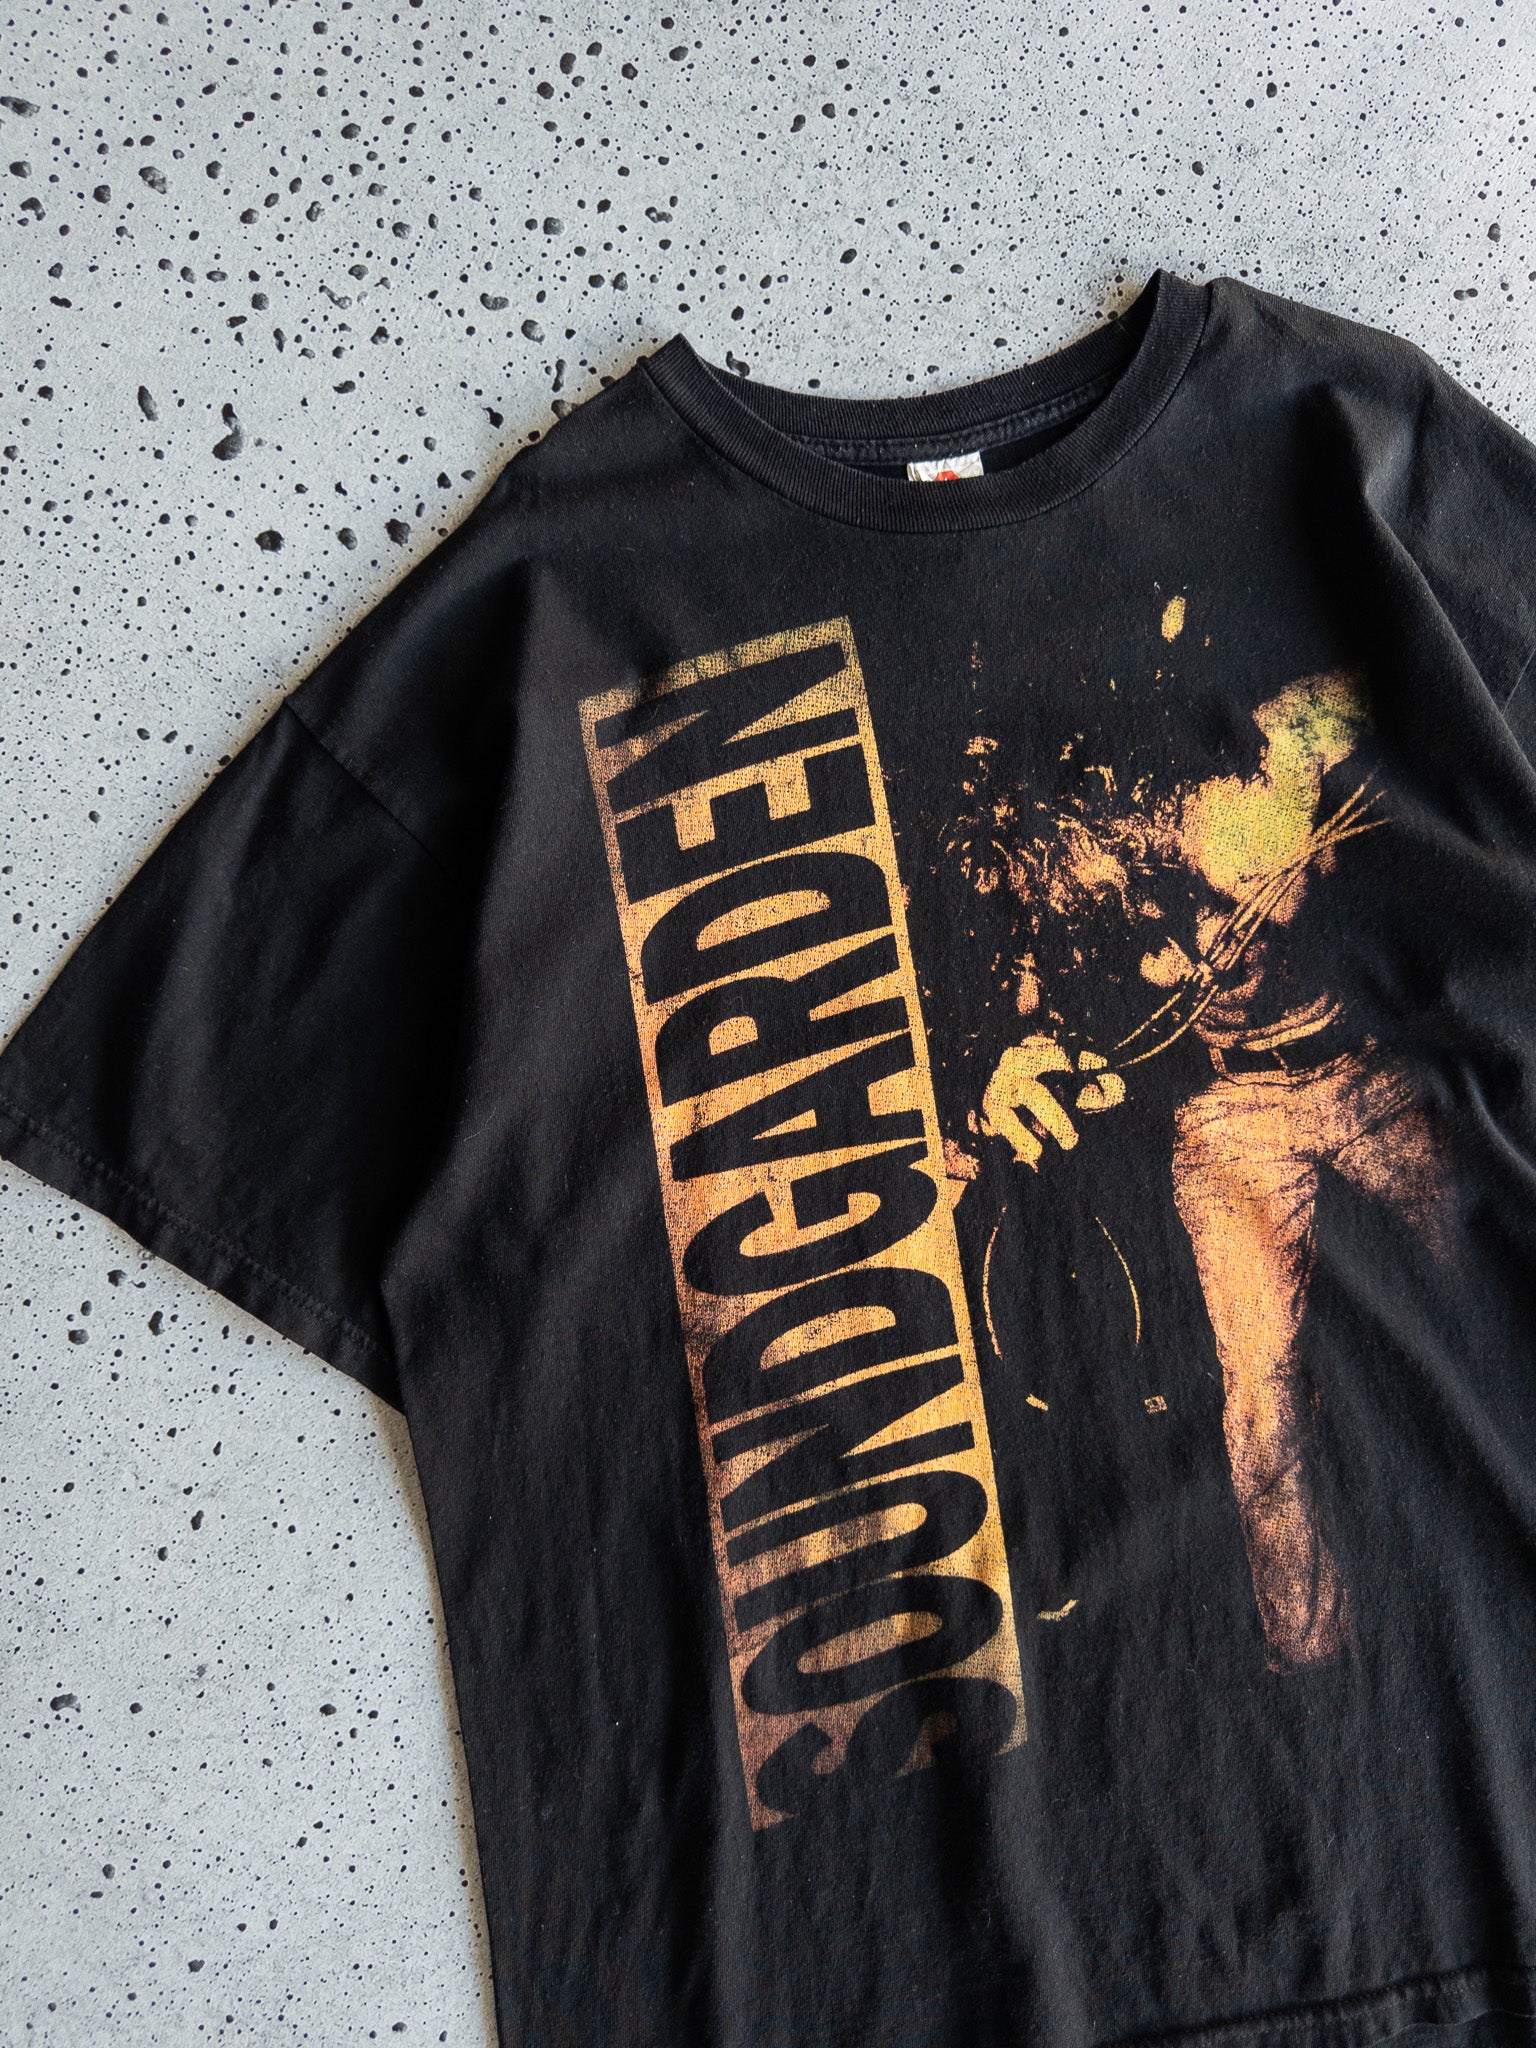 Vintage Soundgarden 2014 Tour Tee (XL)